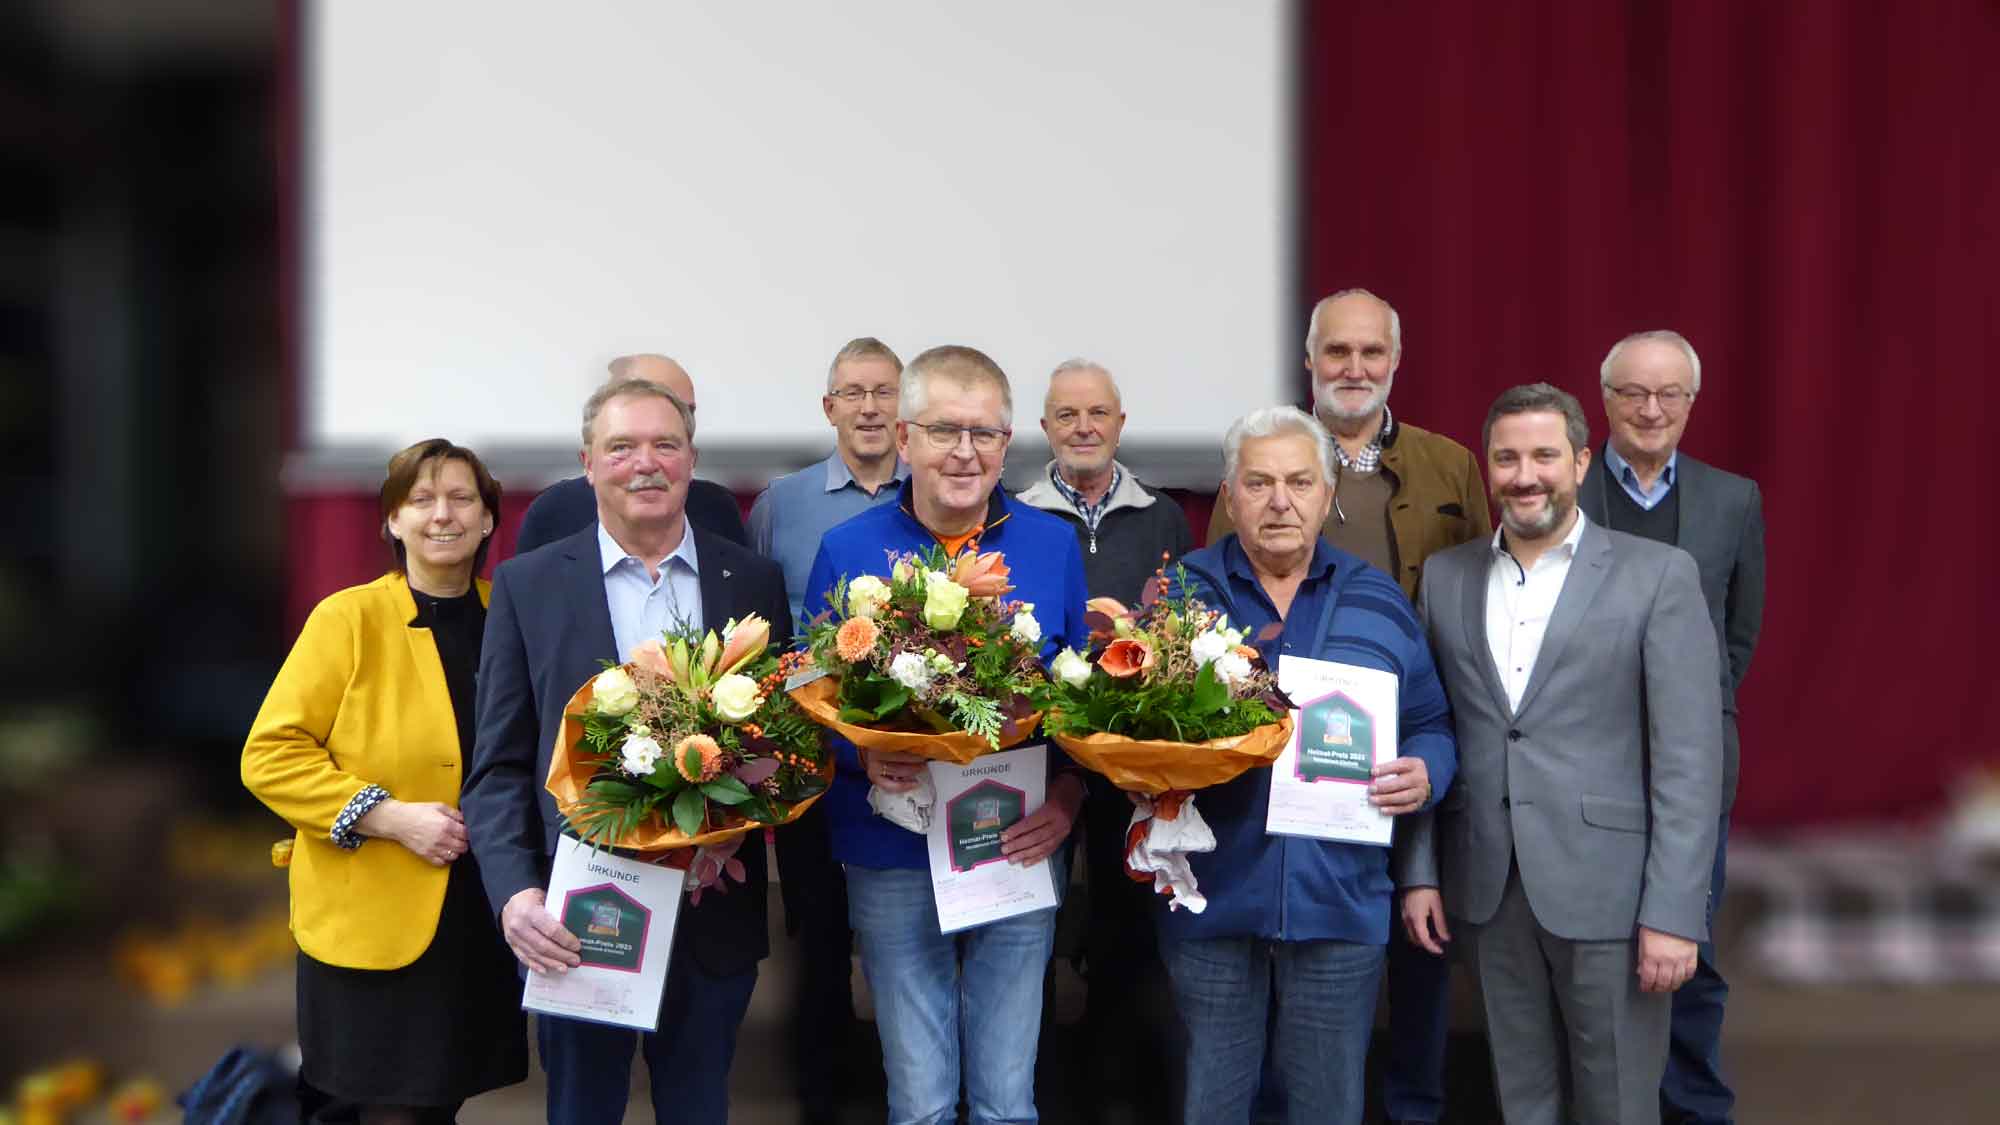 Herzebrock Clarholz vergibt erstmals Heimatpreis, 3 Gewinner freuen sich über Auszeichnung